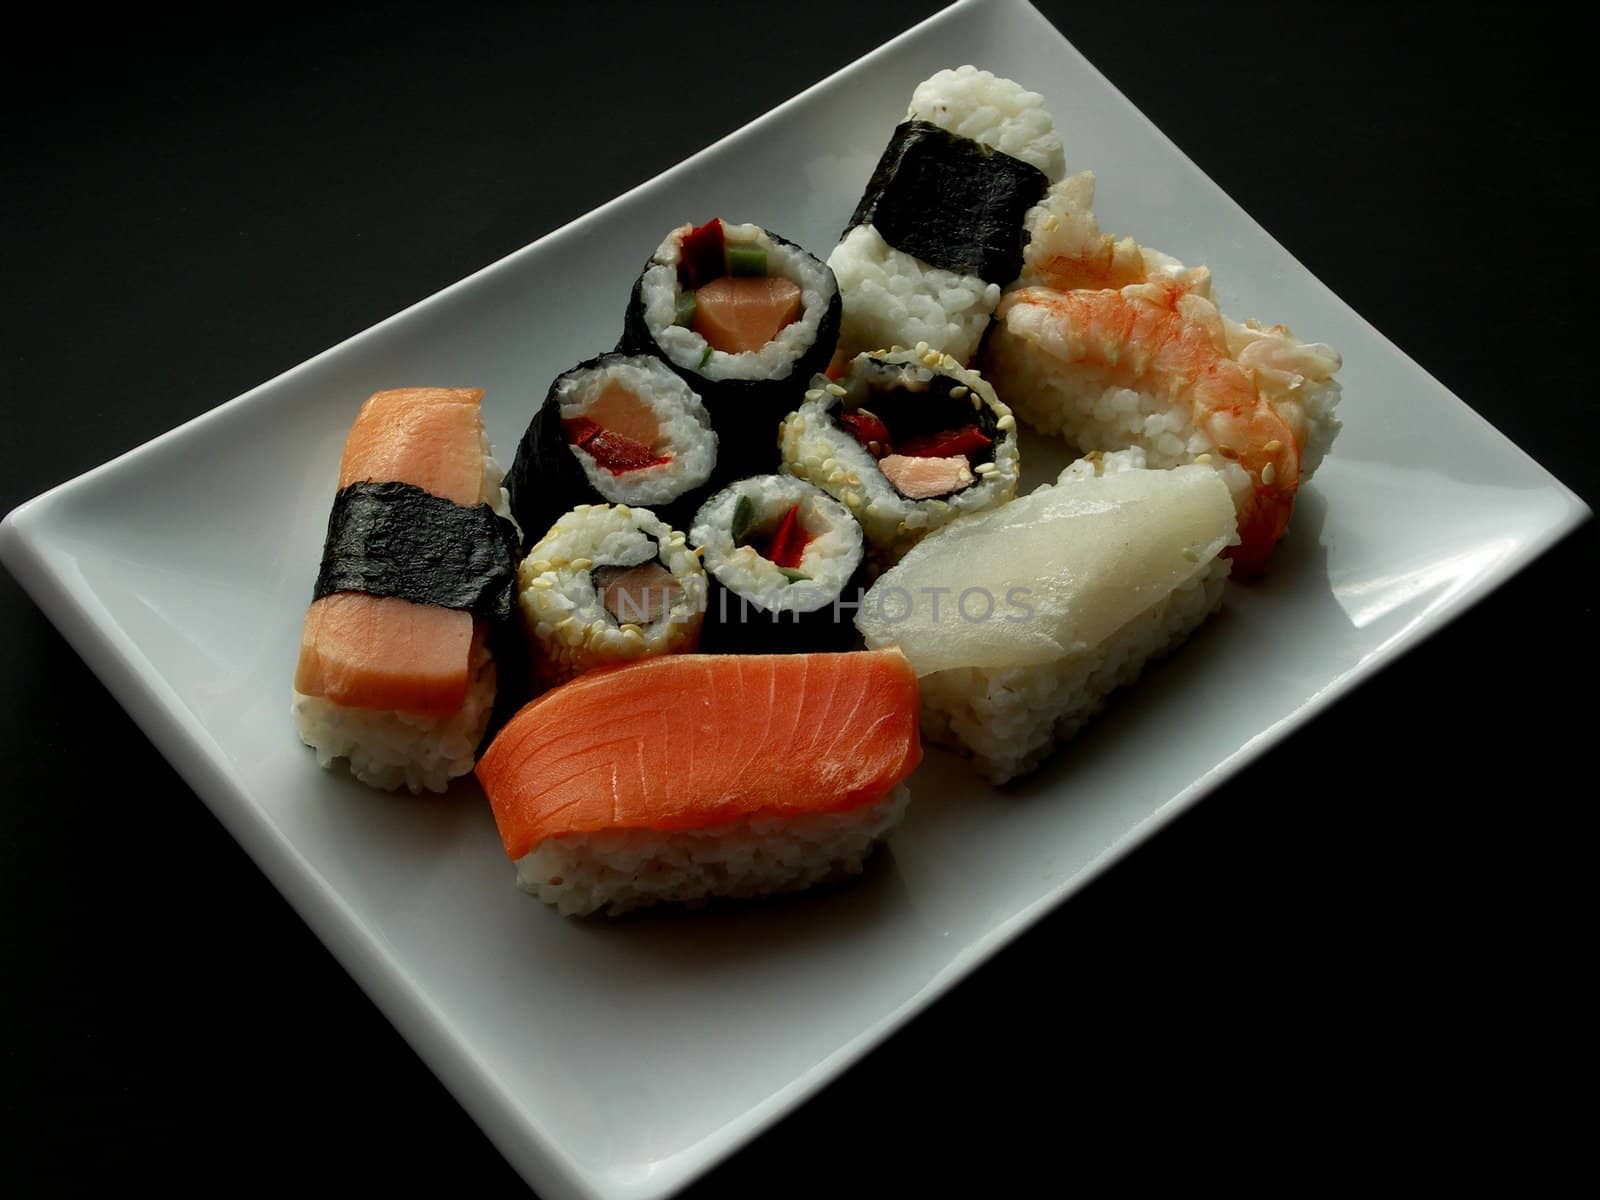 Dish of sushi.